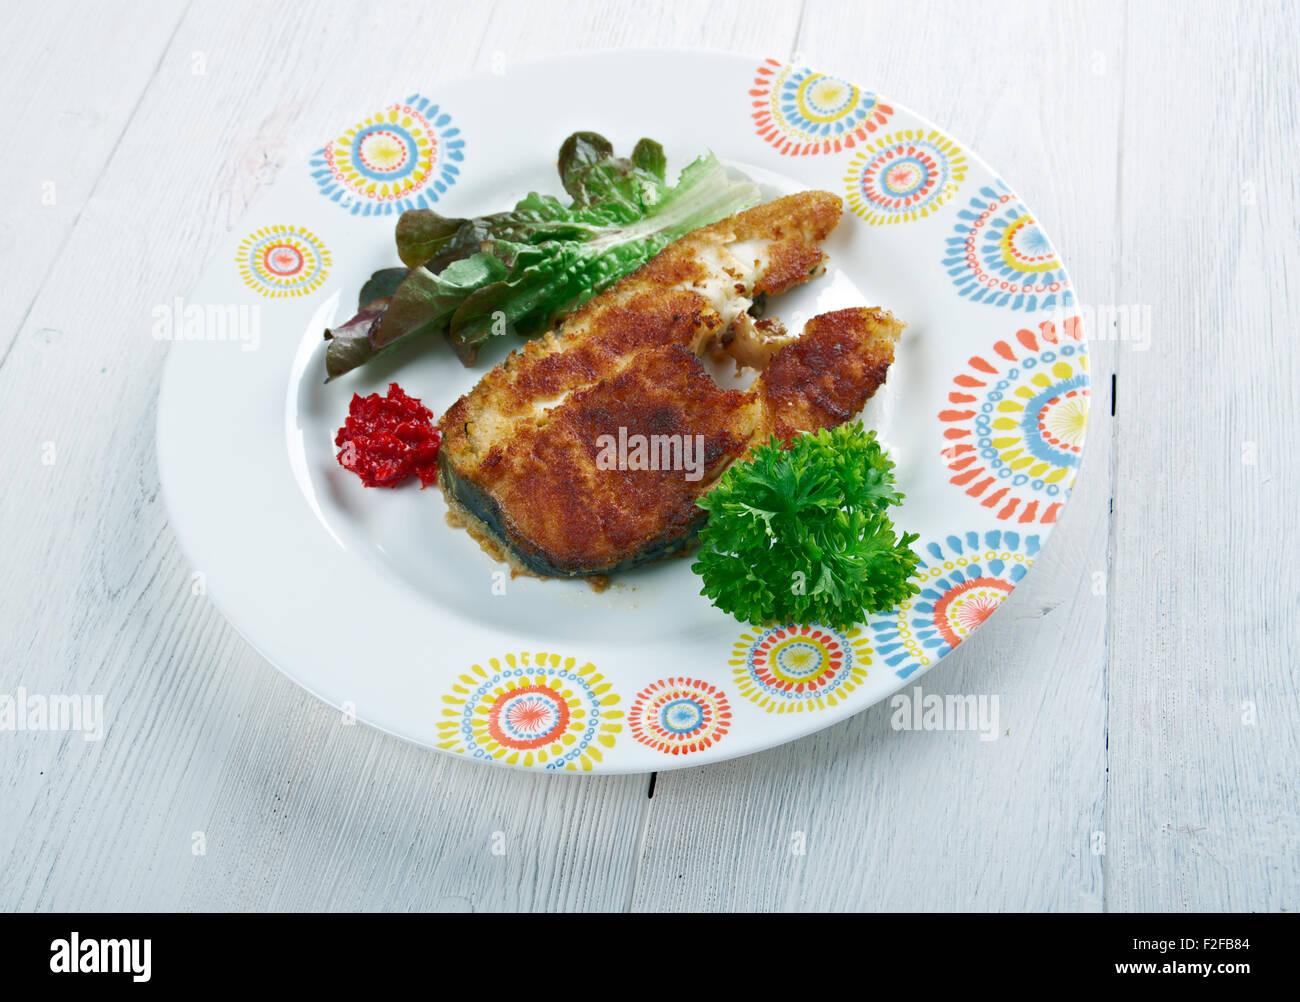 Kenam - gebratener Fisch. Ghanaische Essen Stockfoto